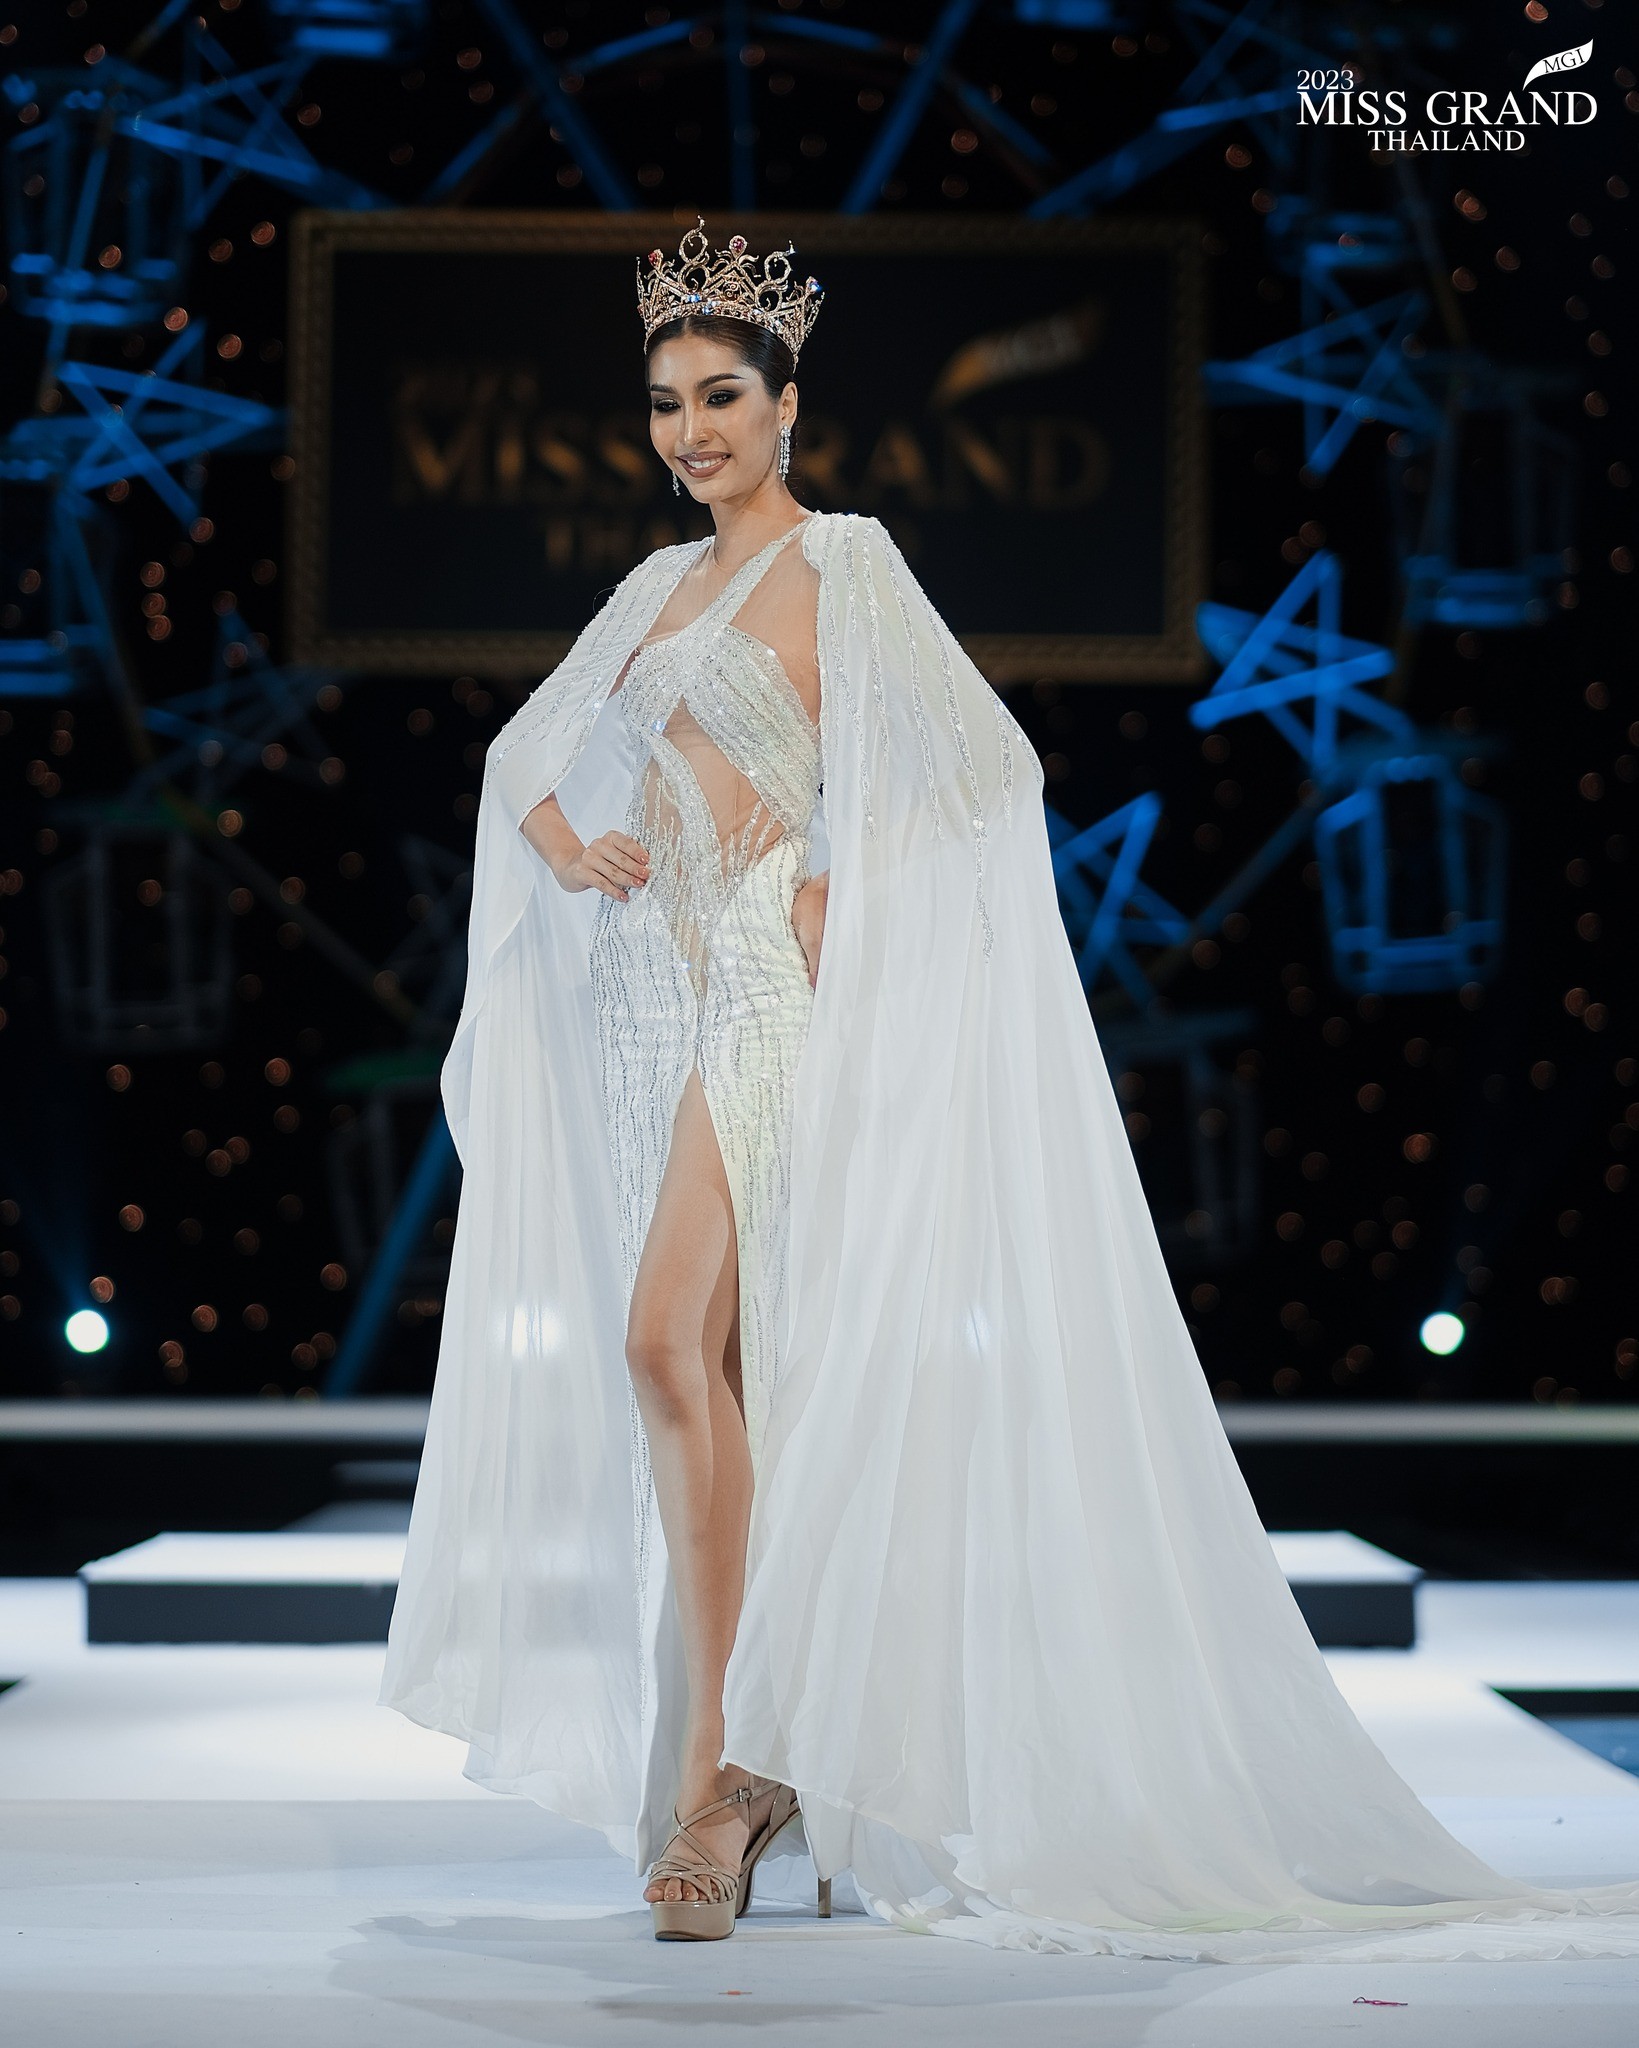 Váy áo cắt xẻ phản cảm tràn ngập Hoa hậu Hòa bình Thái Lan - Ảnh 1.